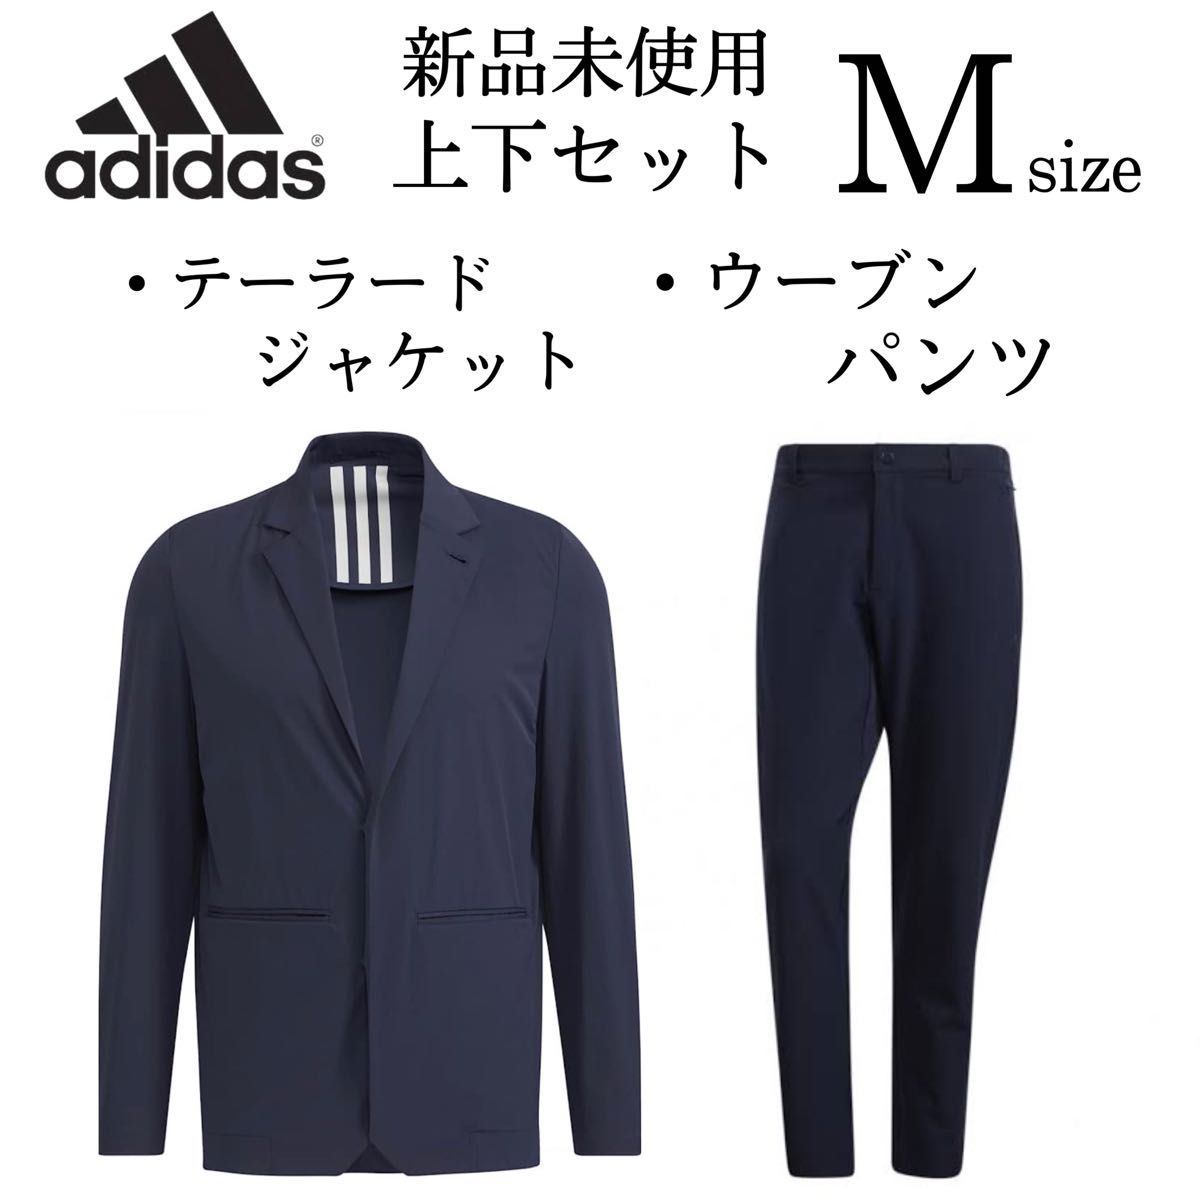 新品 adidas スーツ上下セット M テーラードジャケット ウーブンパンツ 紺 ネイビー セットアップスーツ